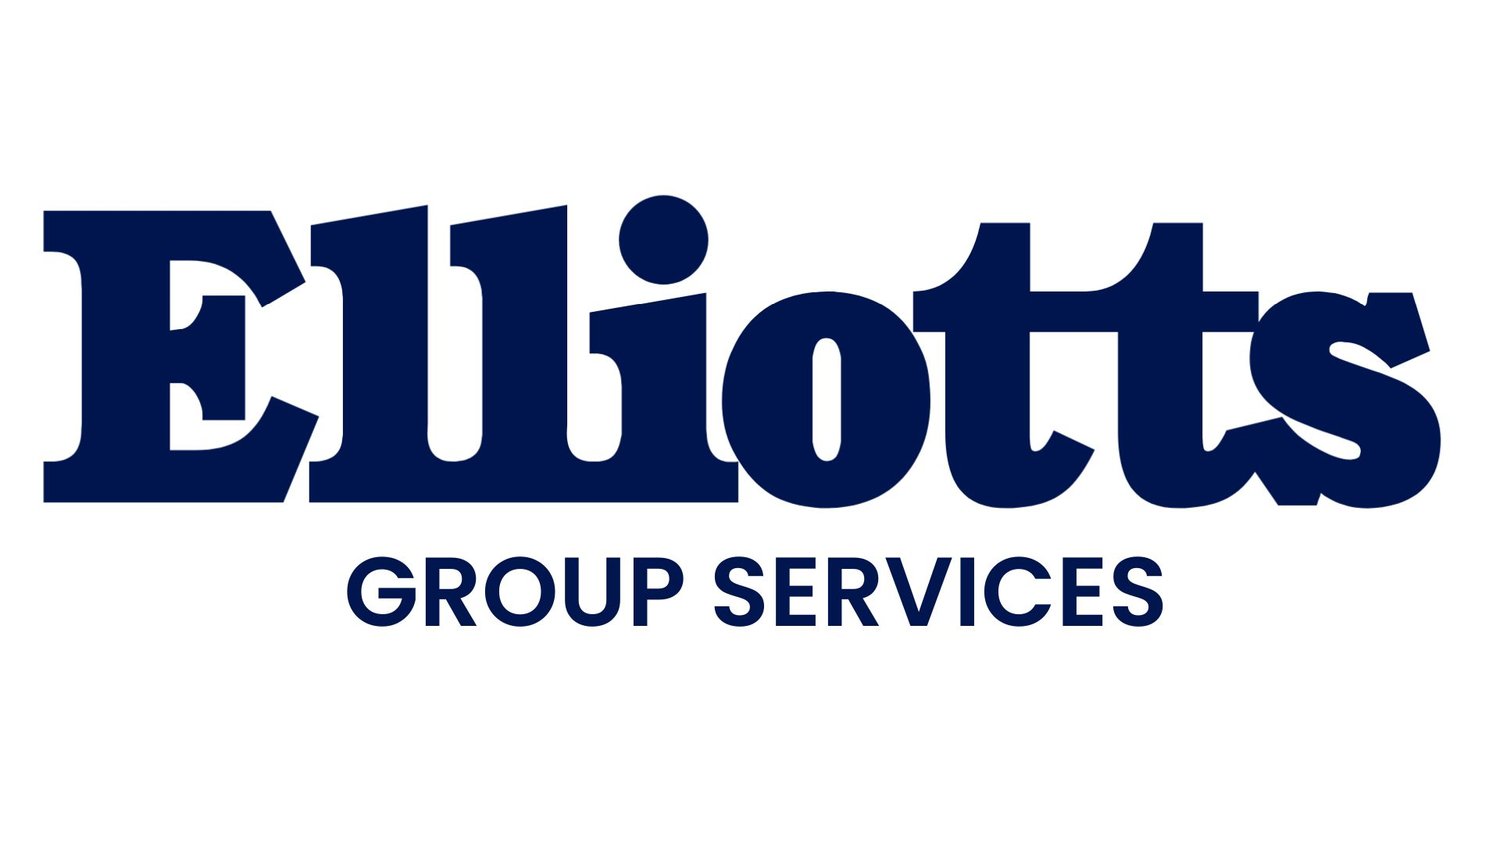 Elliotts Group